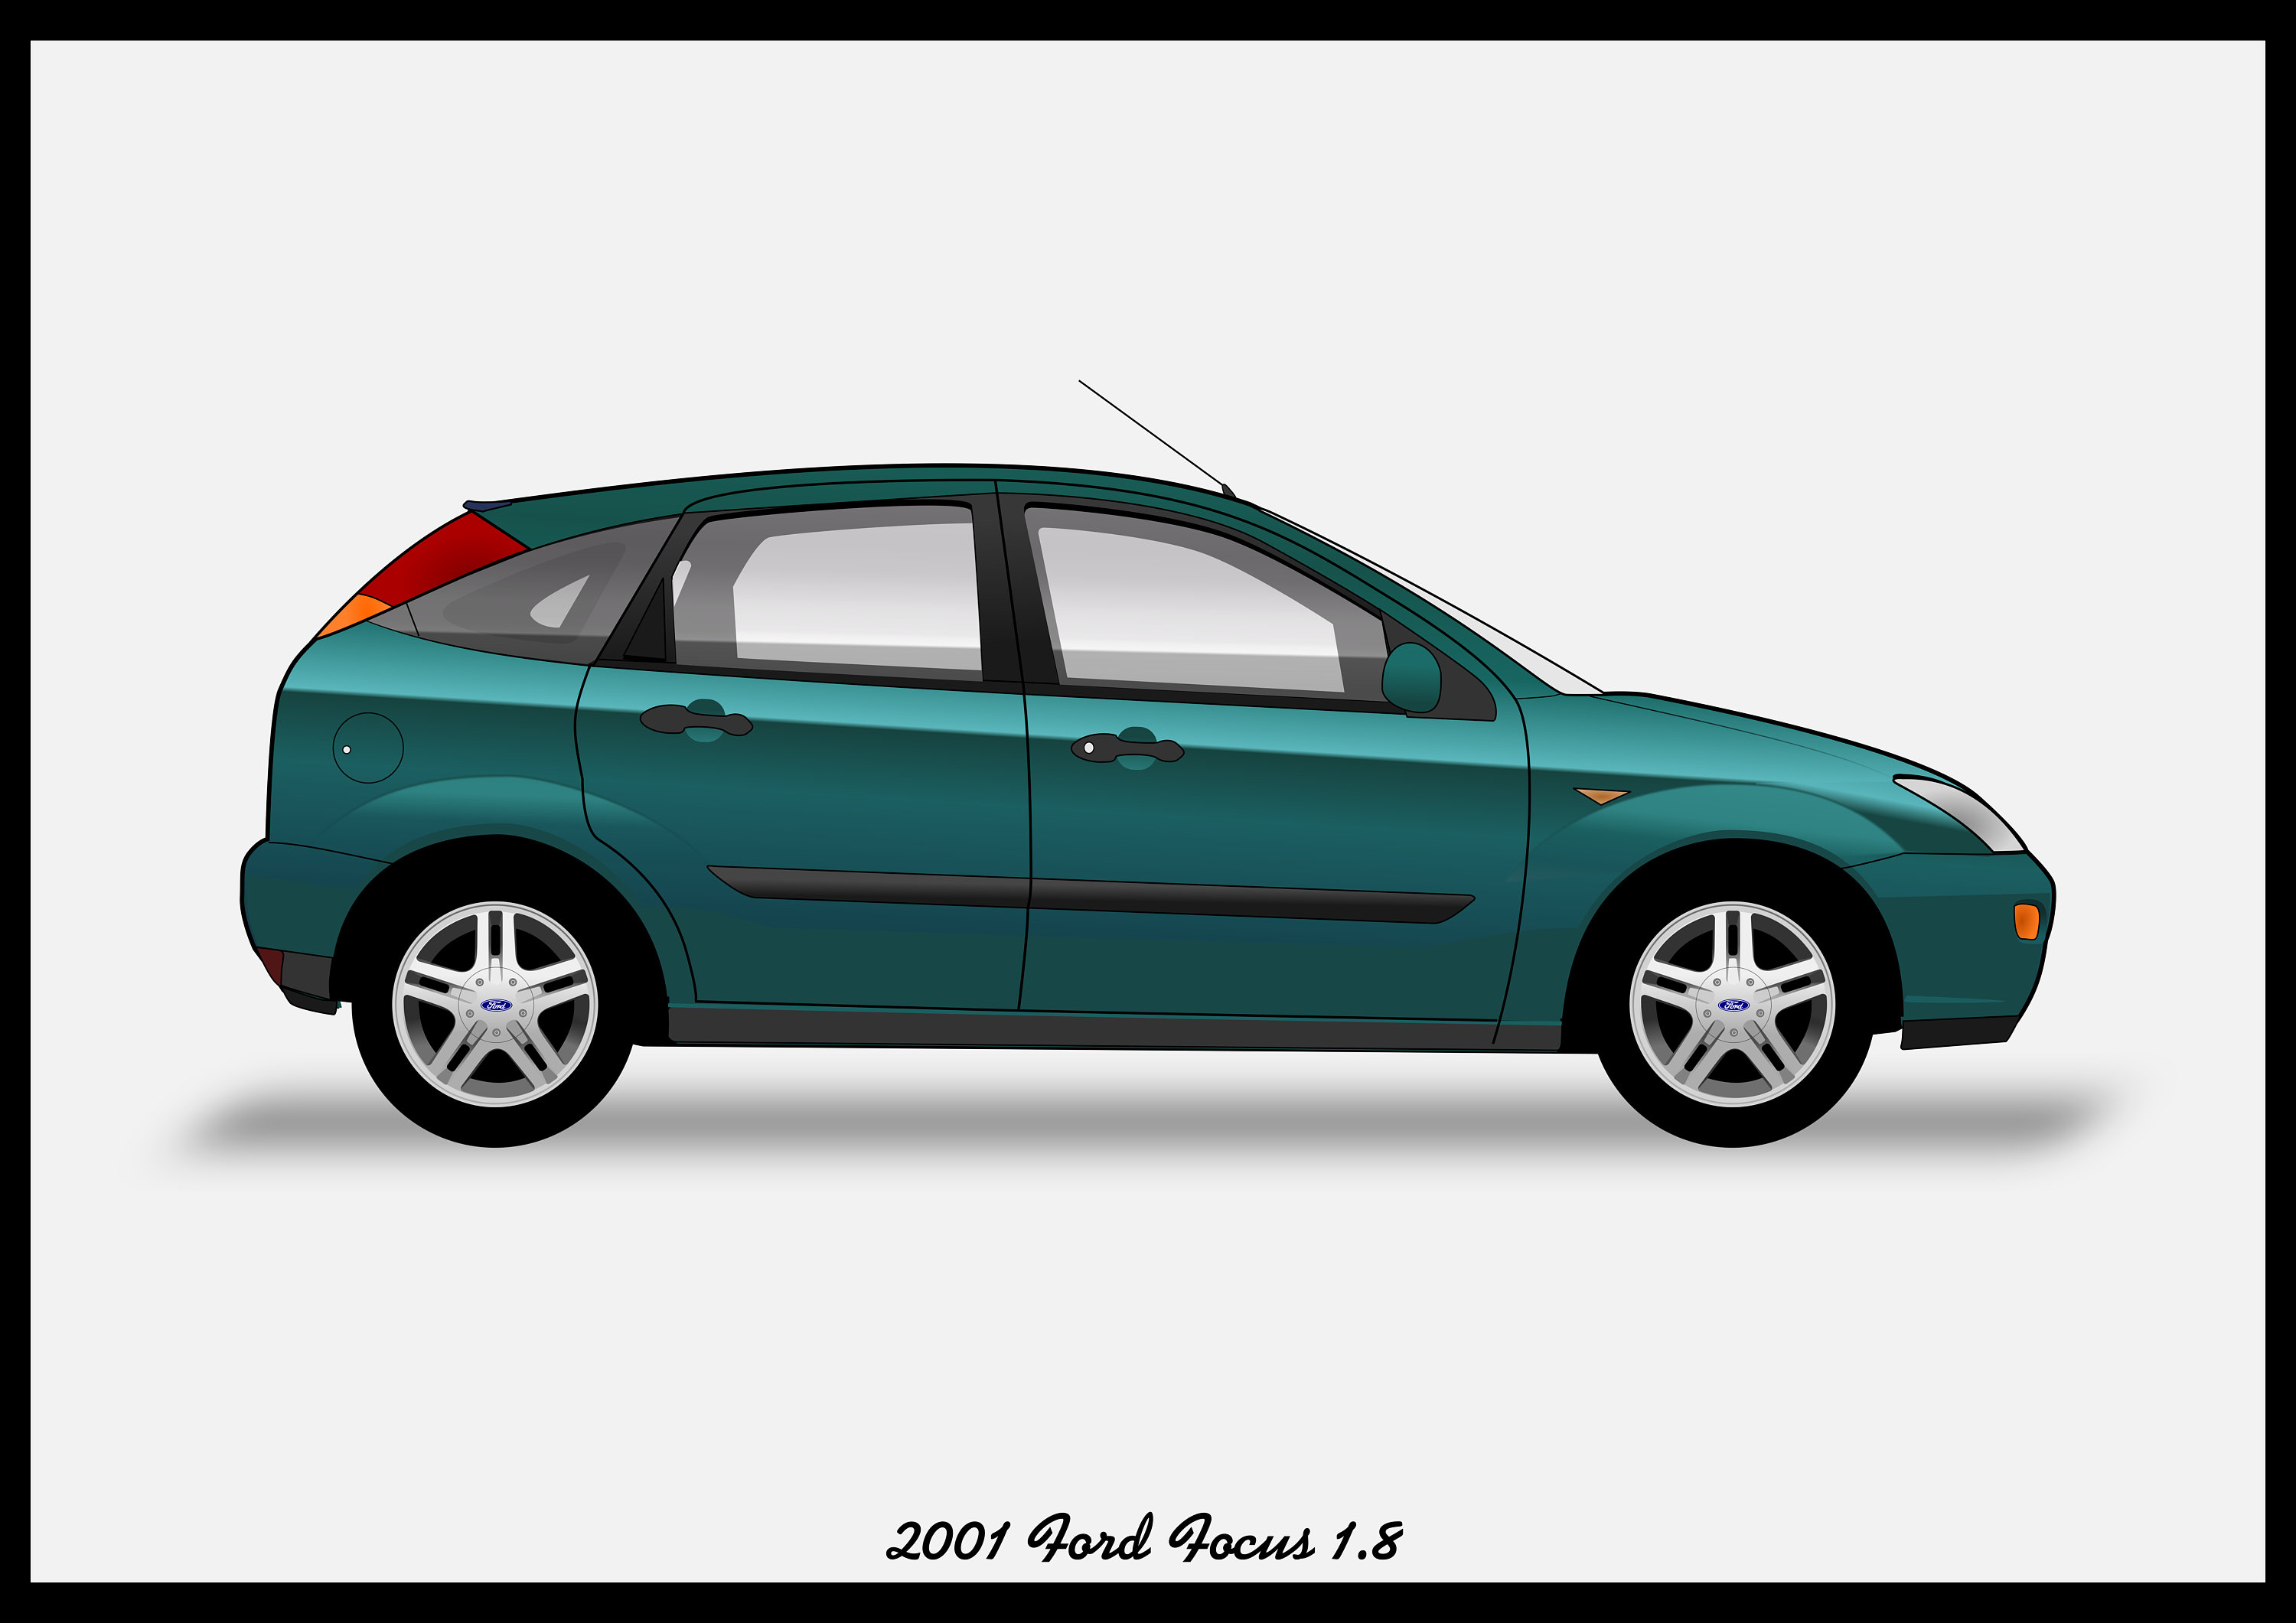 Ford Focus MK1 Facelift (Baujahr 2003) by PhilippMayr on DeviantArt